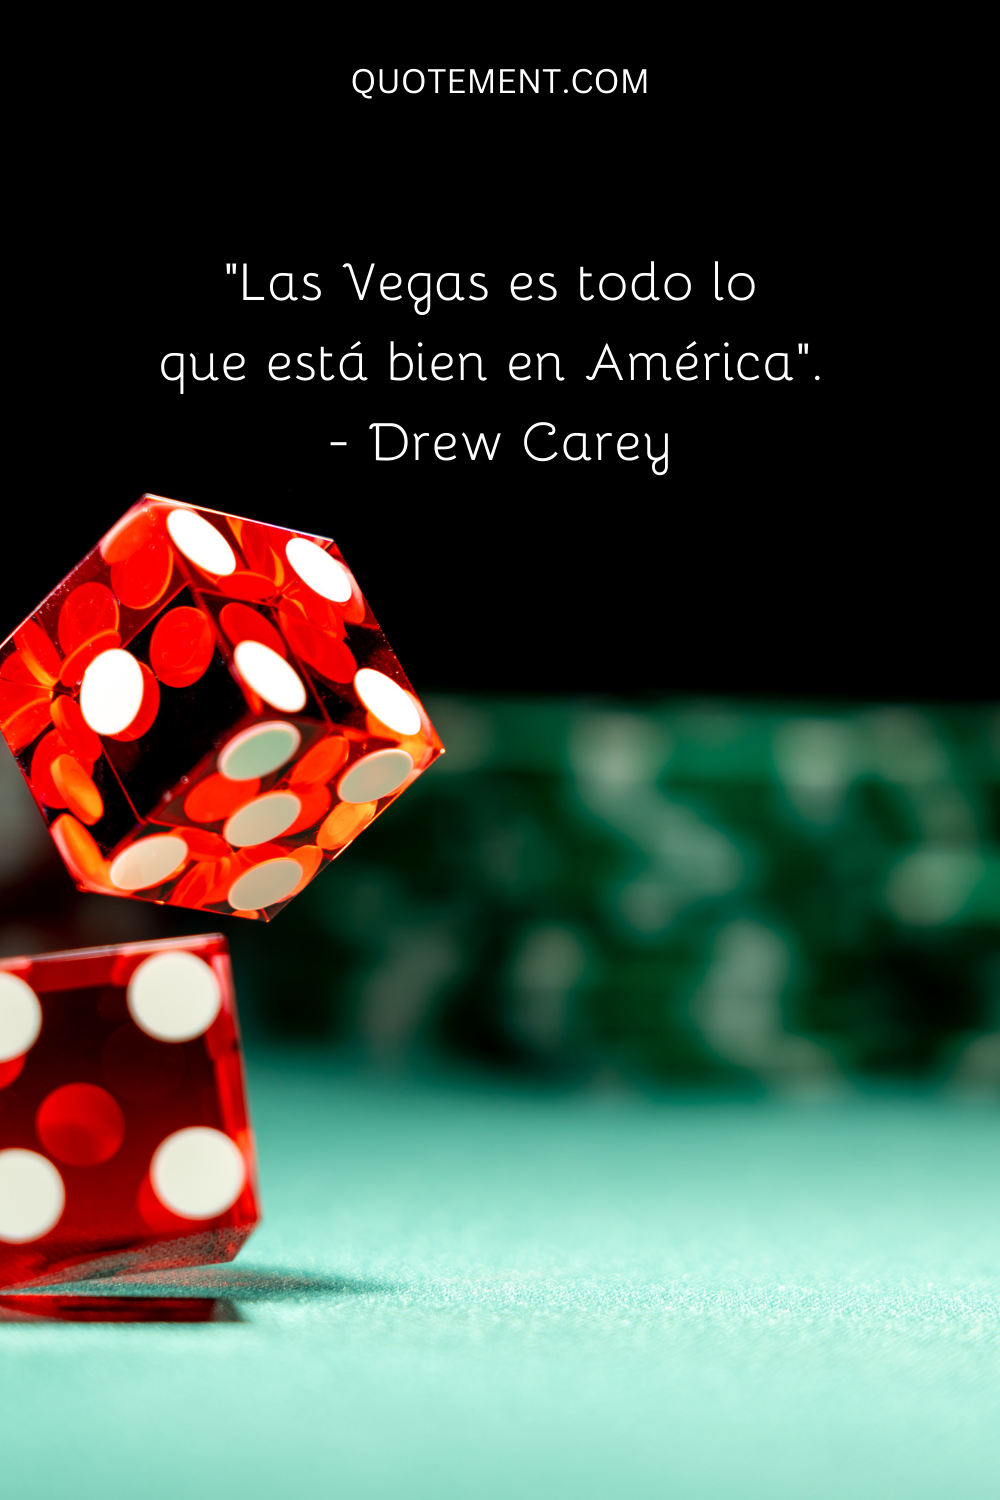 "Las Vegas es todo lo que está bien en América". - Drew Carey